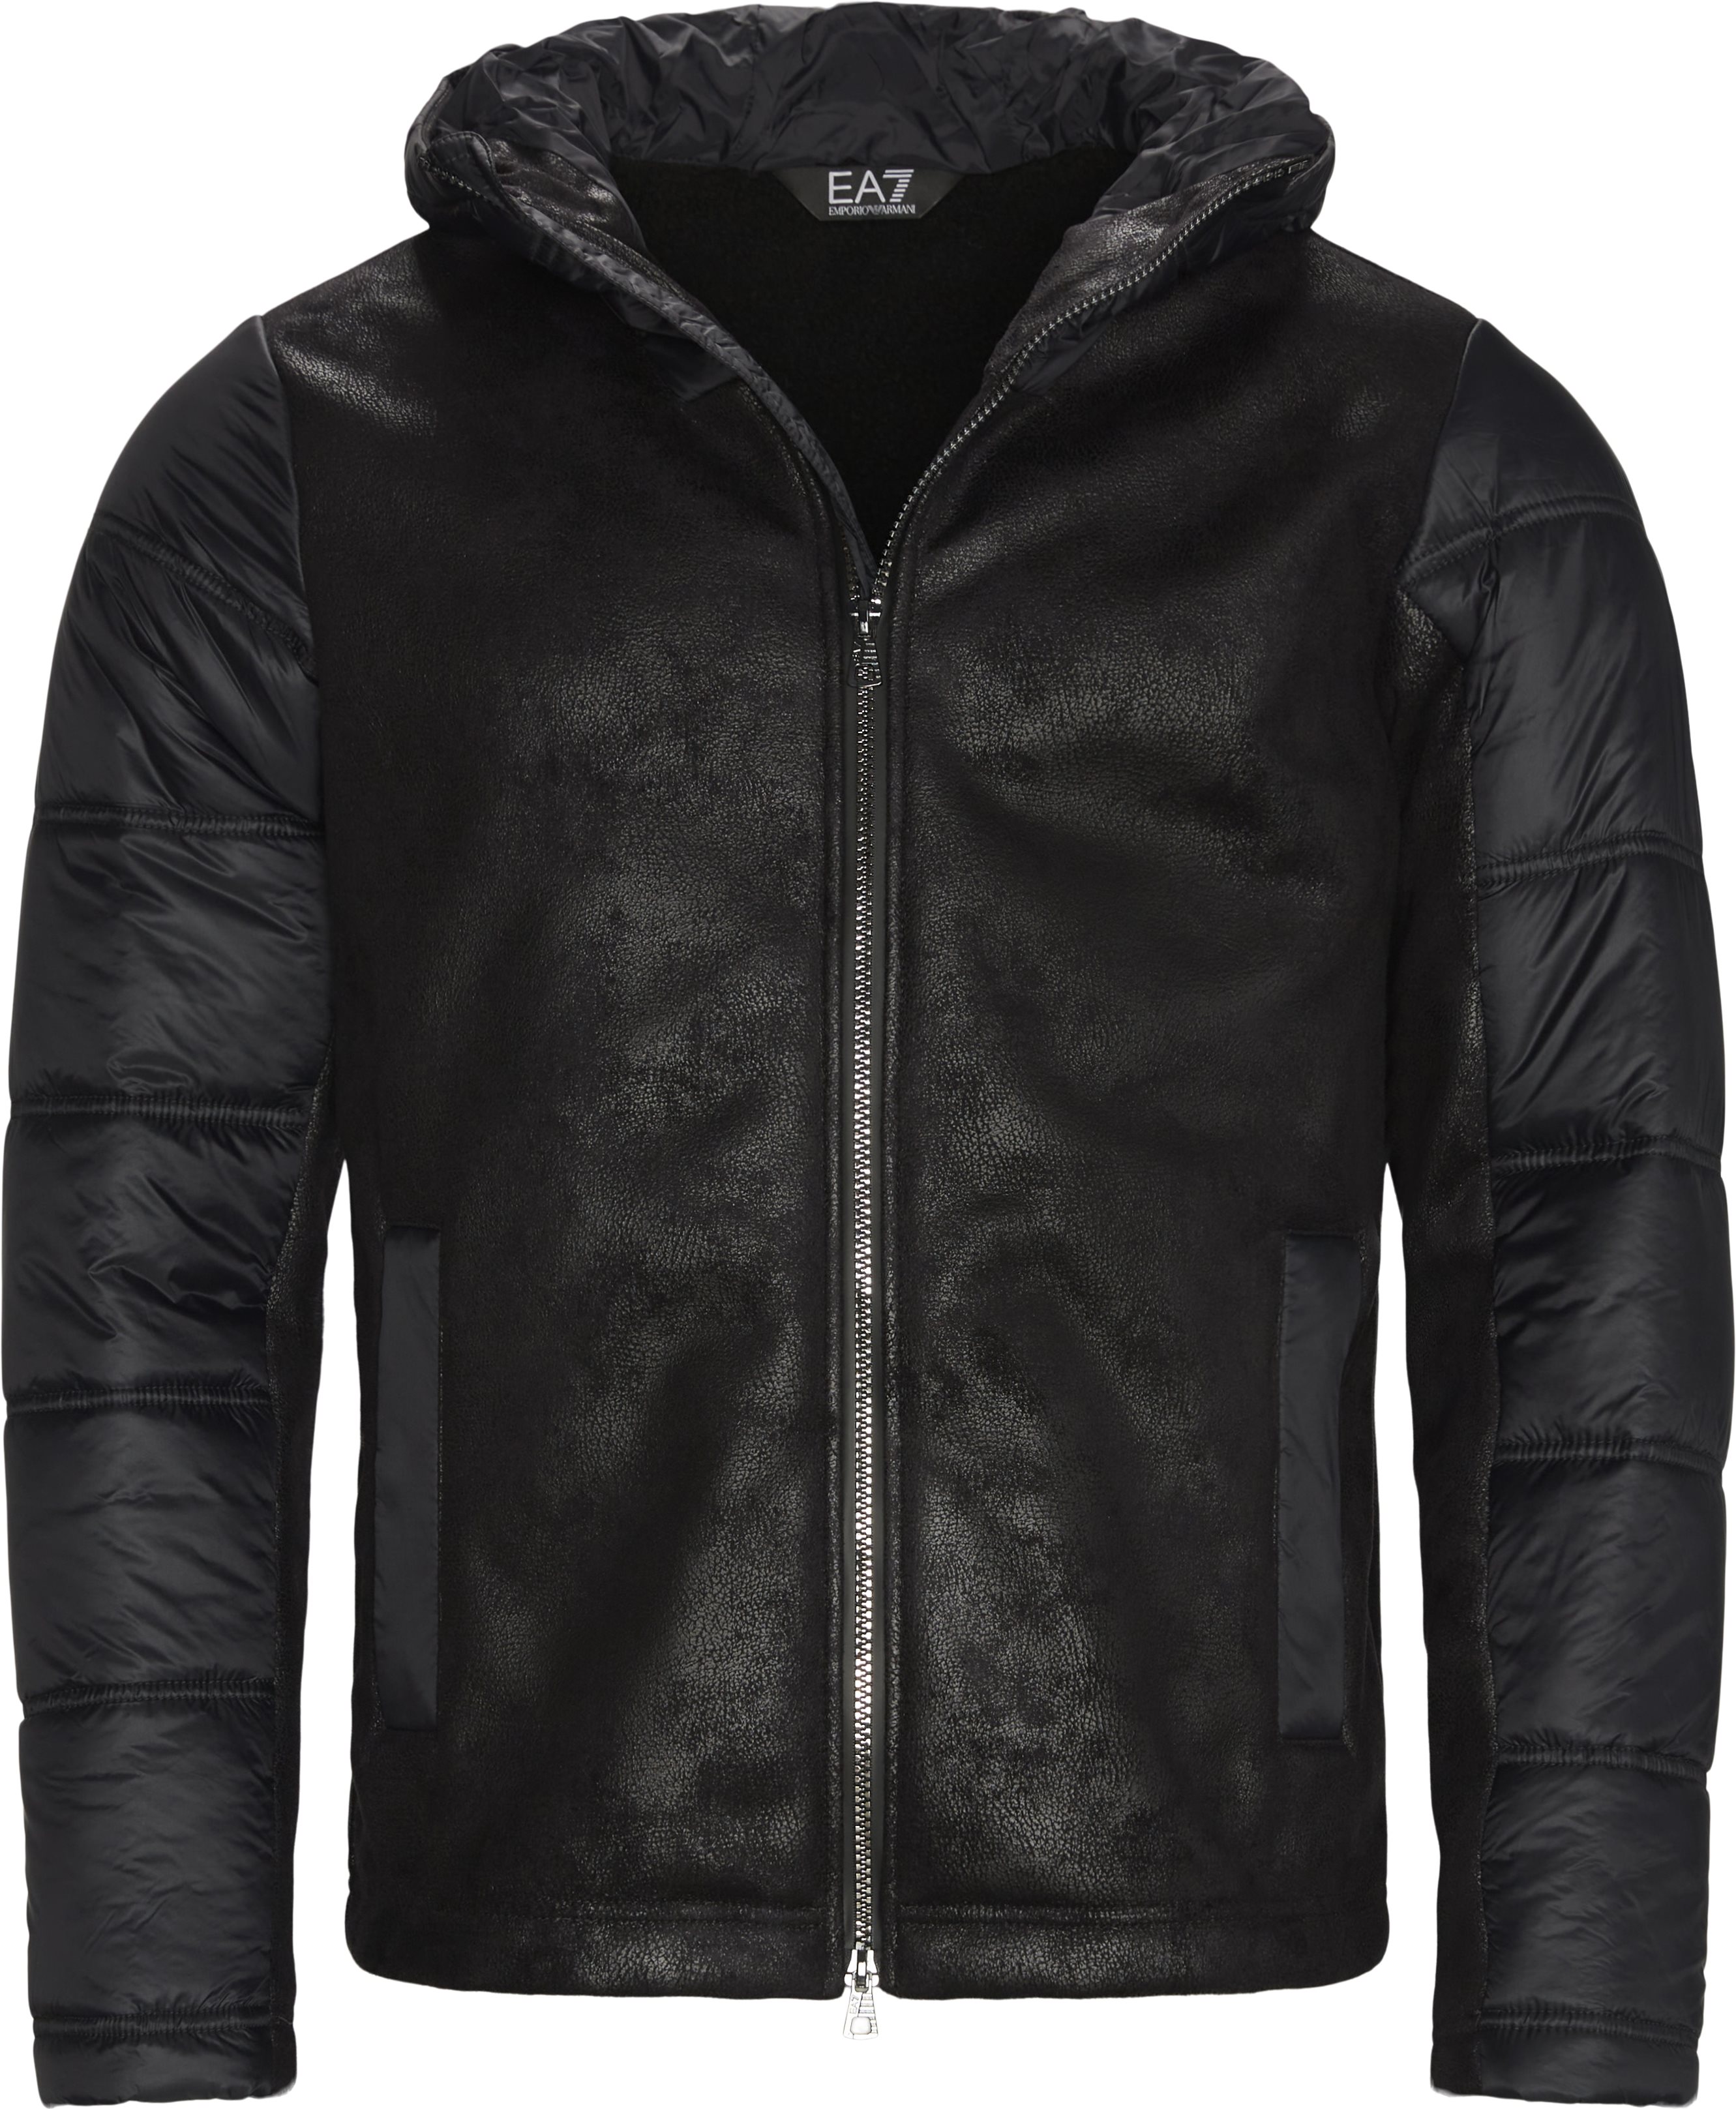 Pn54z-6kpba5 Overgangsjakke - Jackets - Regular fit - Black